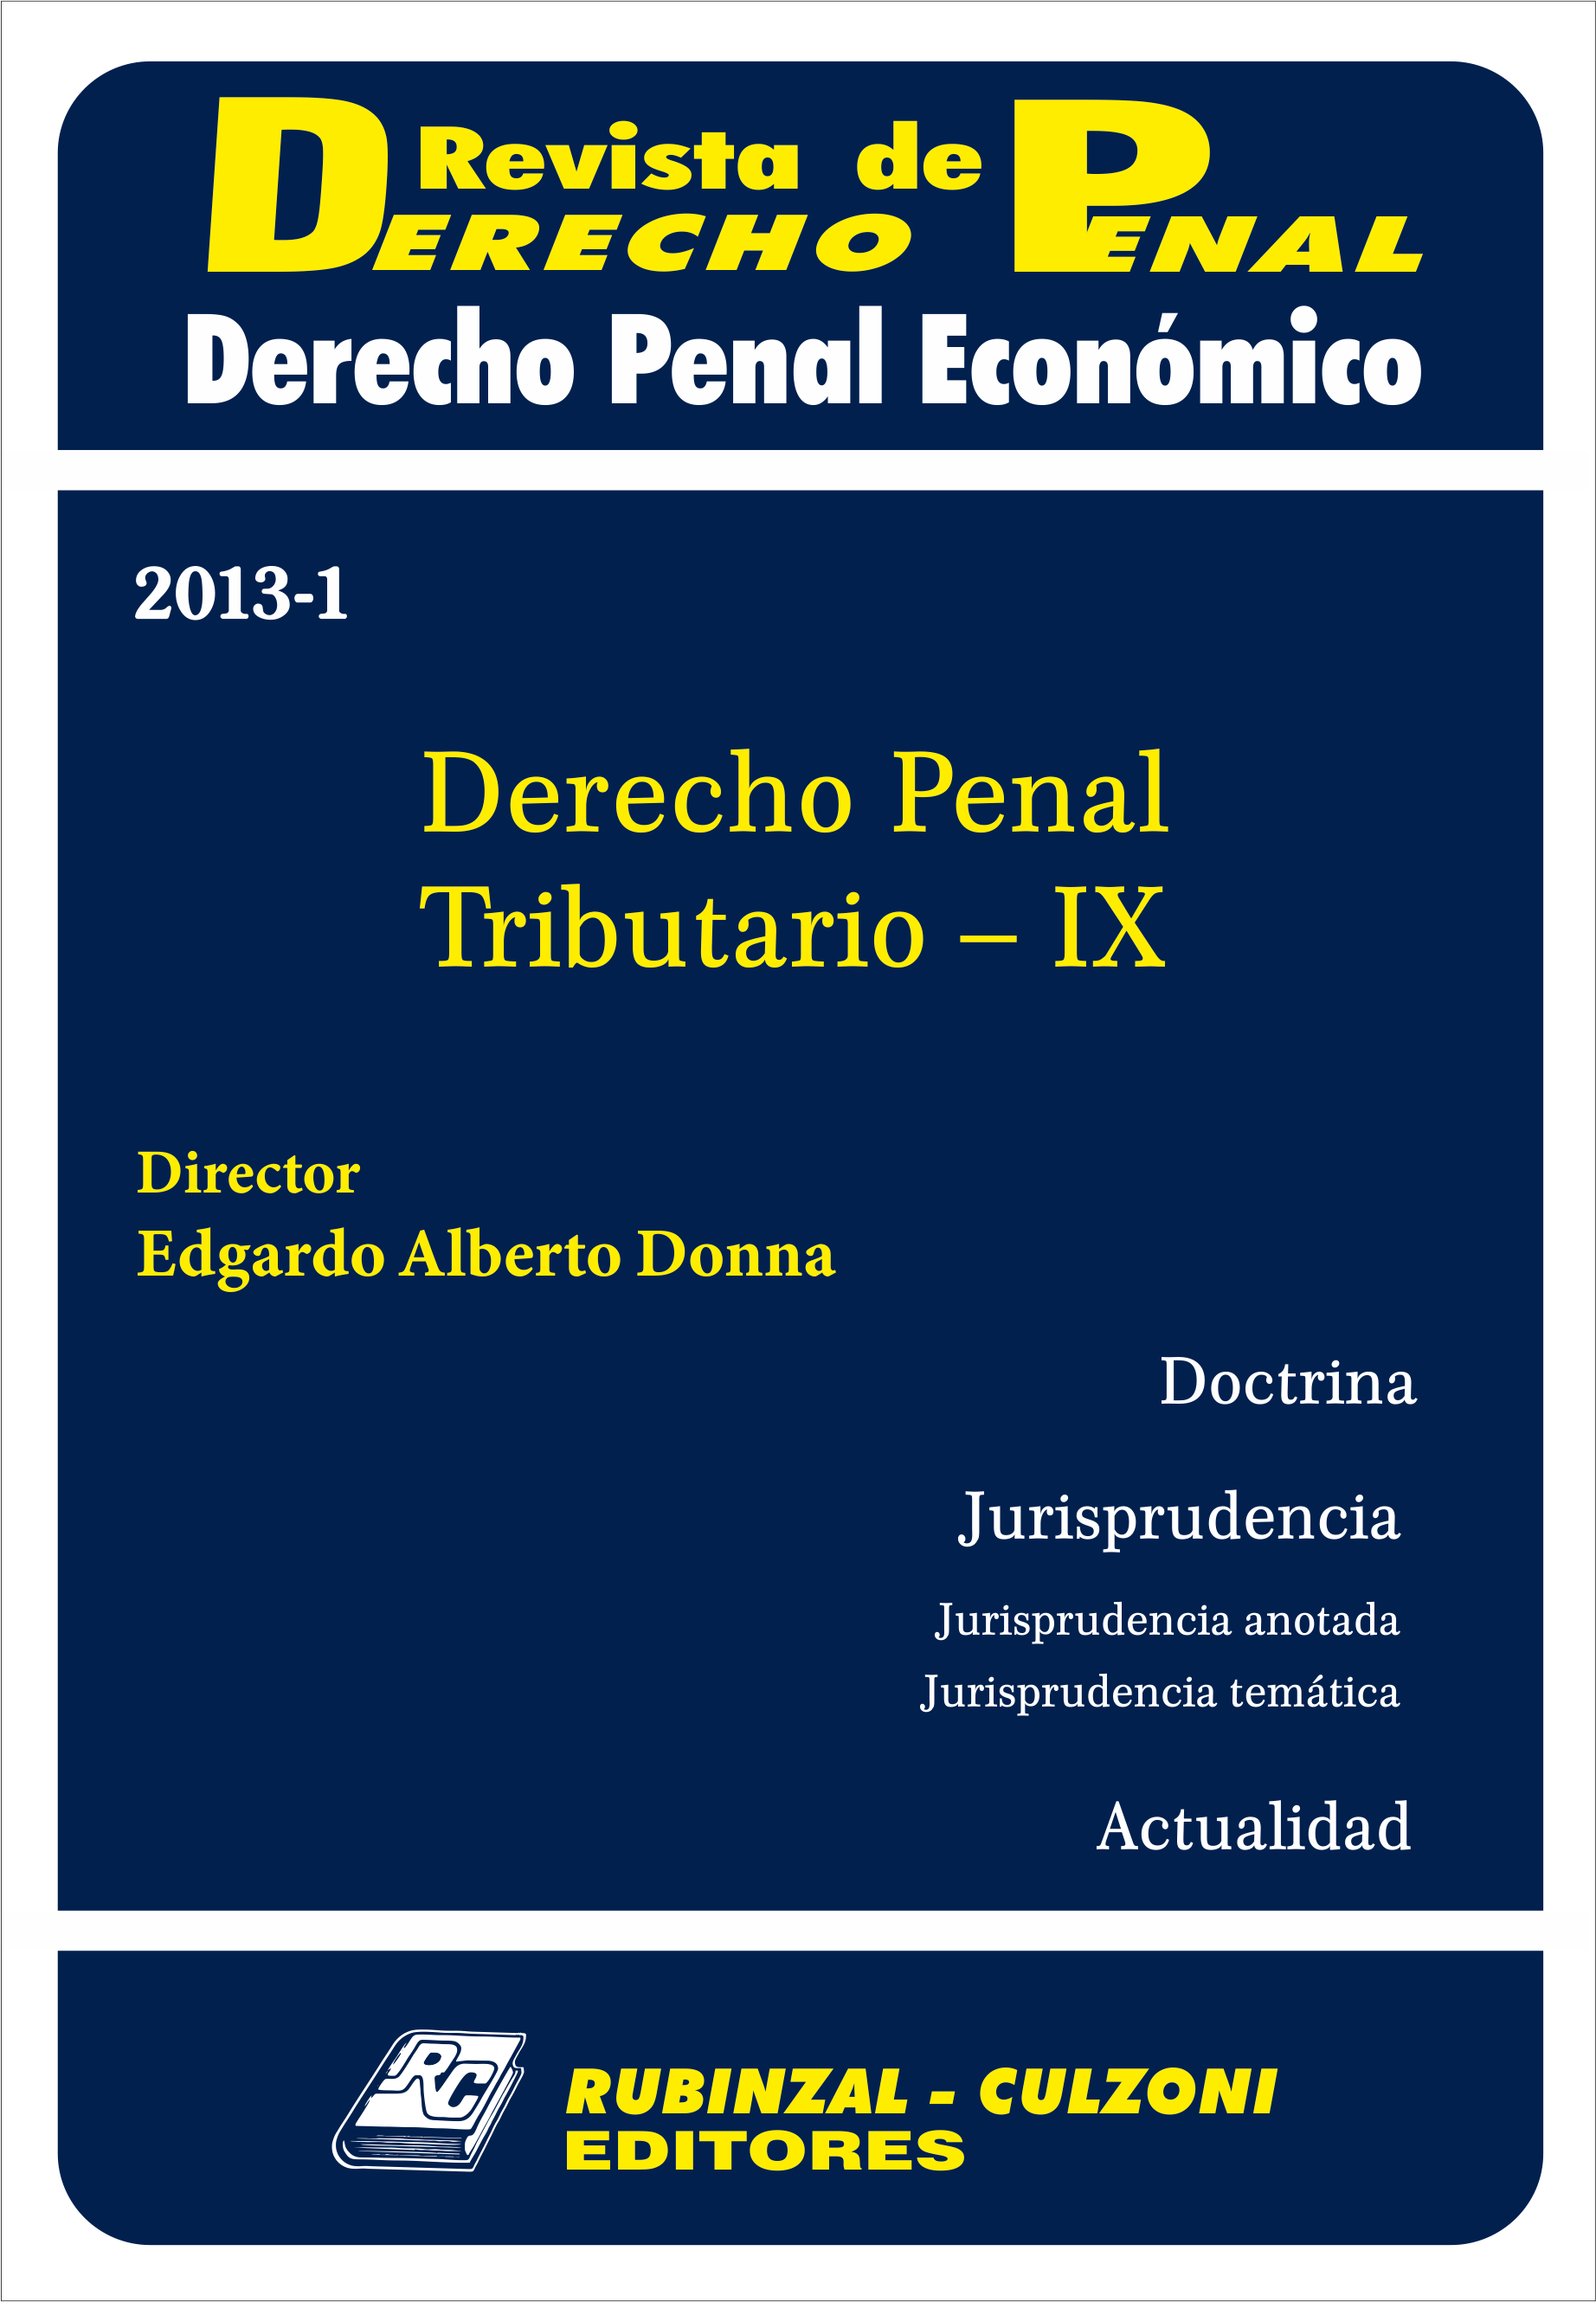 Revista de Derecho Penal Económico - Derecho Penal Tributario - IX.